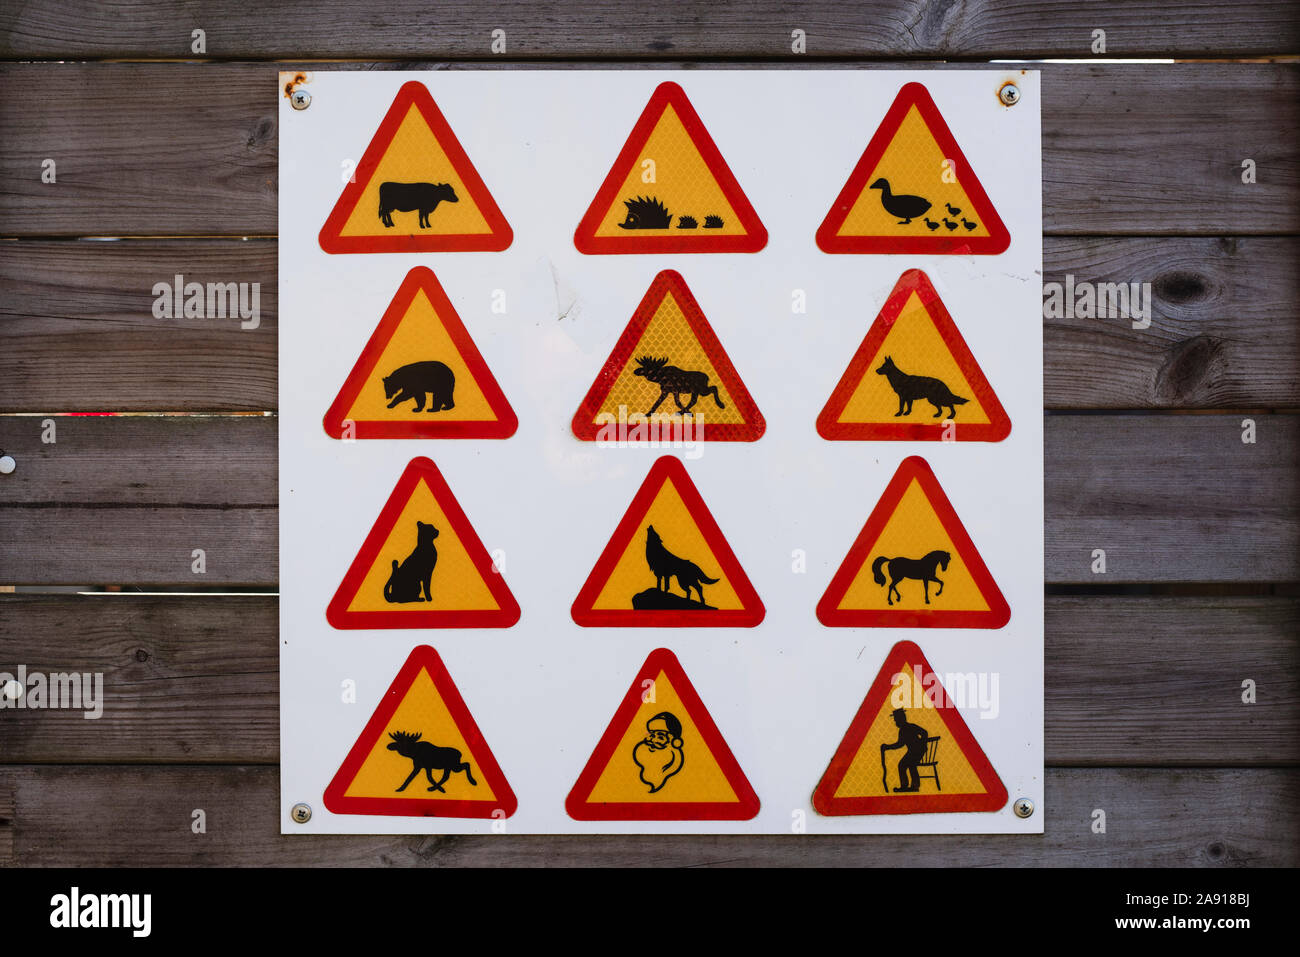 Warning signs Stock Photo